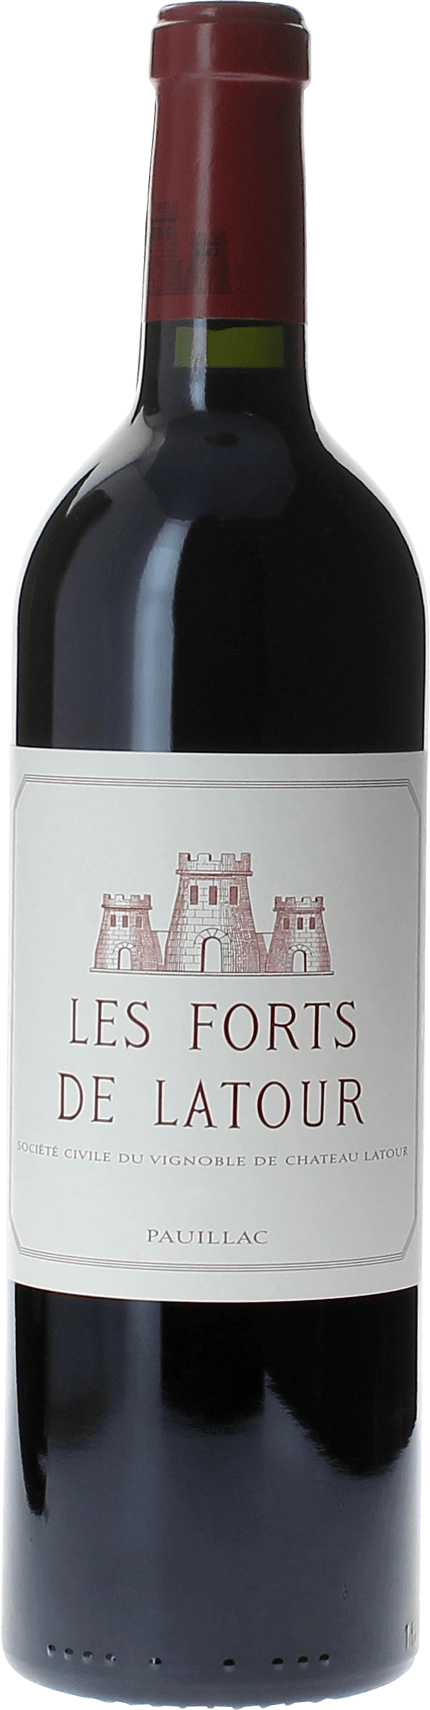 Les forts de latour 1997 2me vin de LATOUR Pauillac, Bordeaux rouge